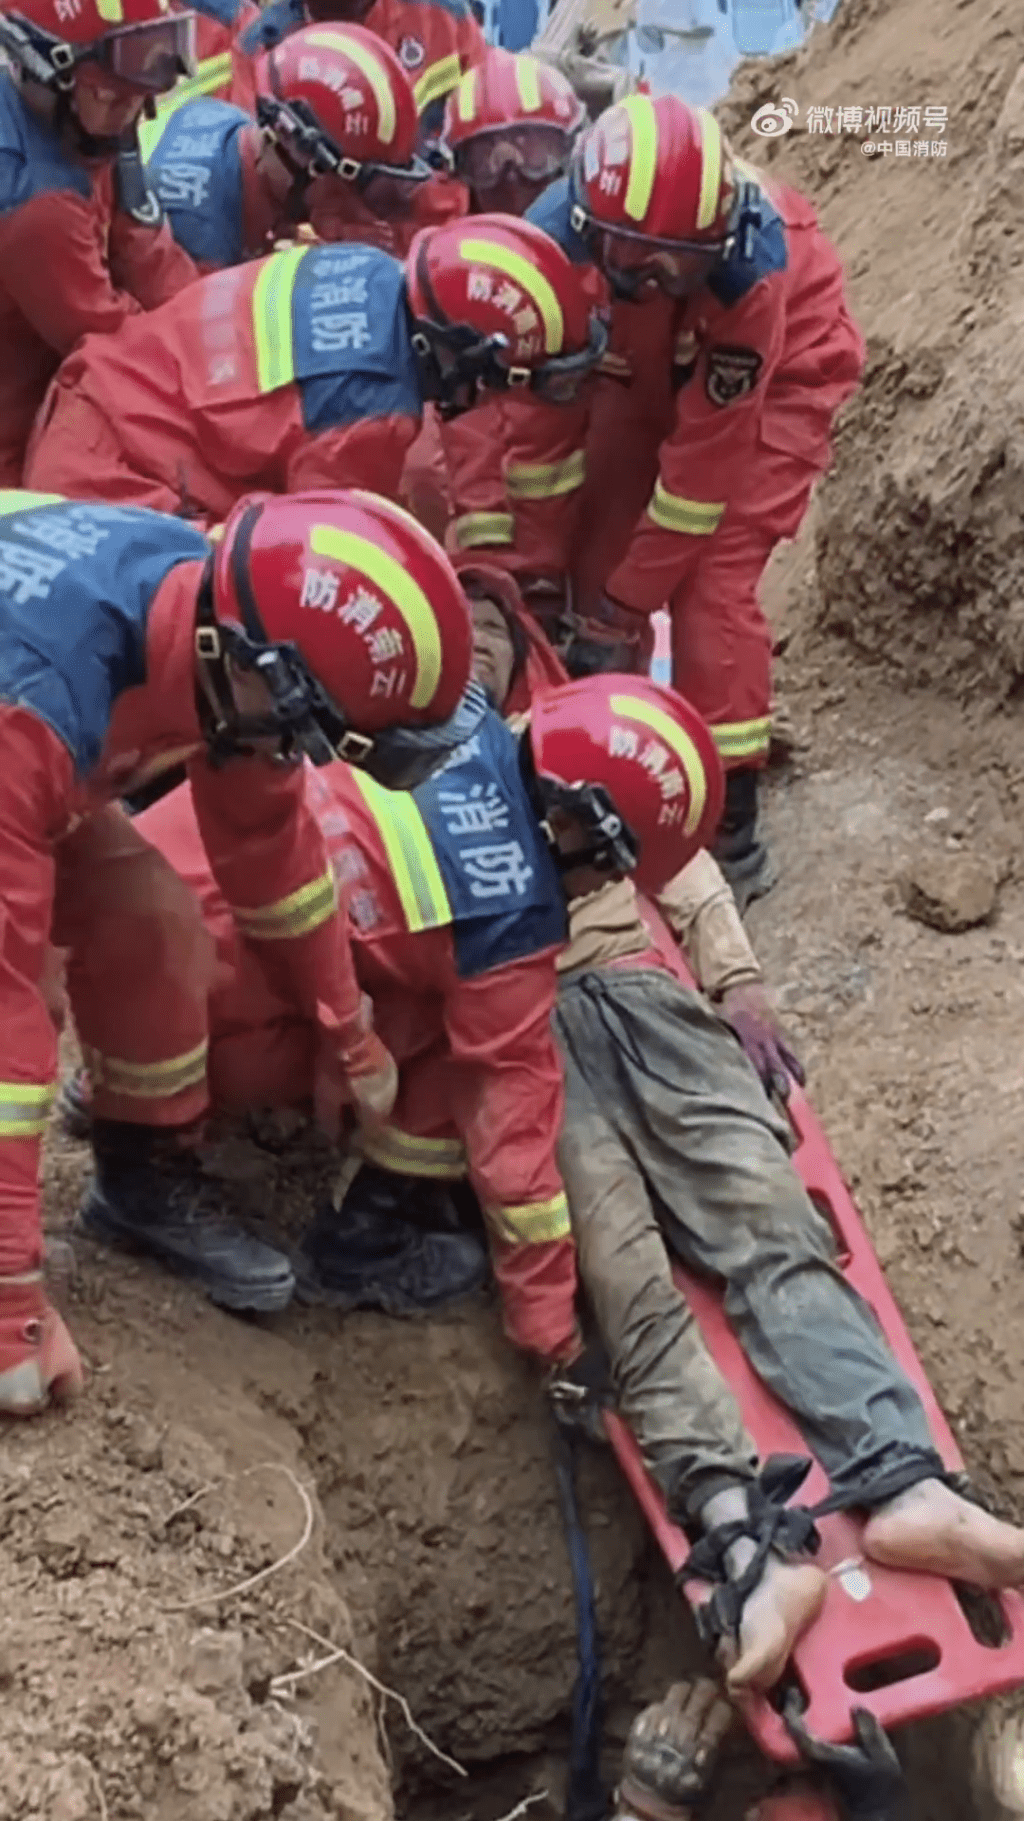 消防员现场抢救被困人士。 中国消防